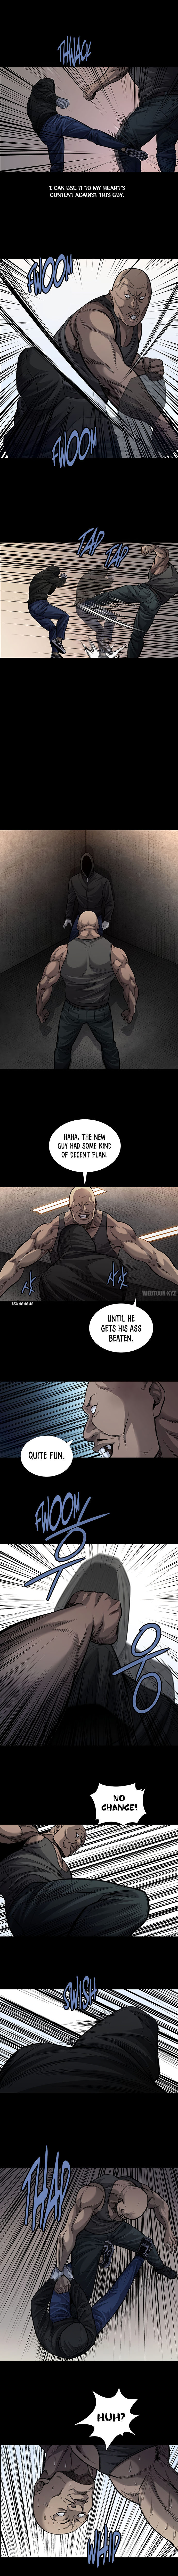 Vigilante - Chapter 101 Page 4